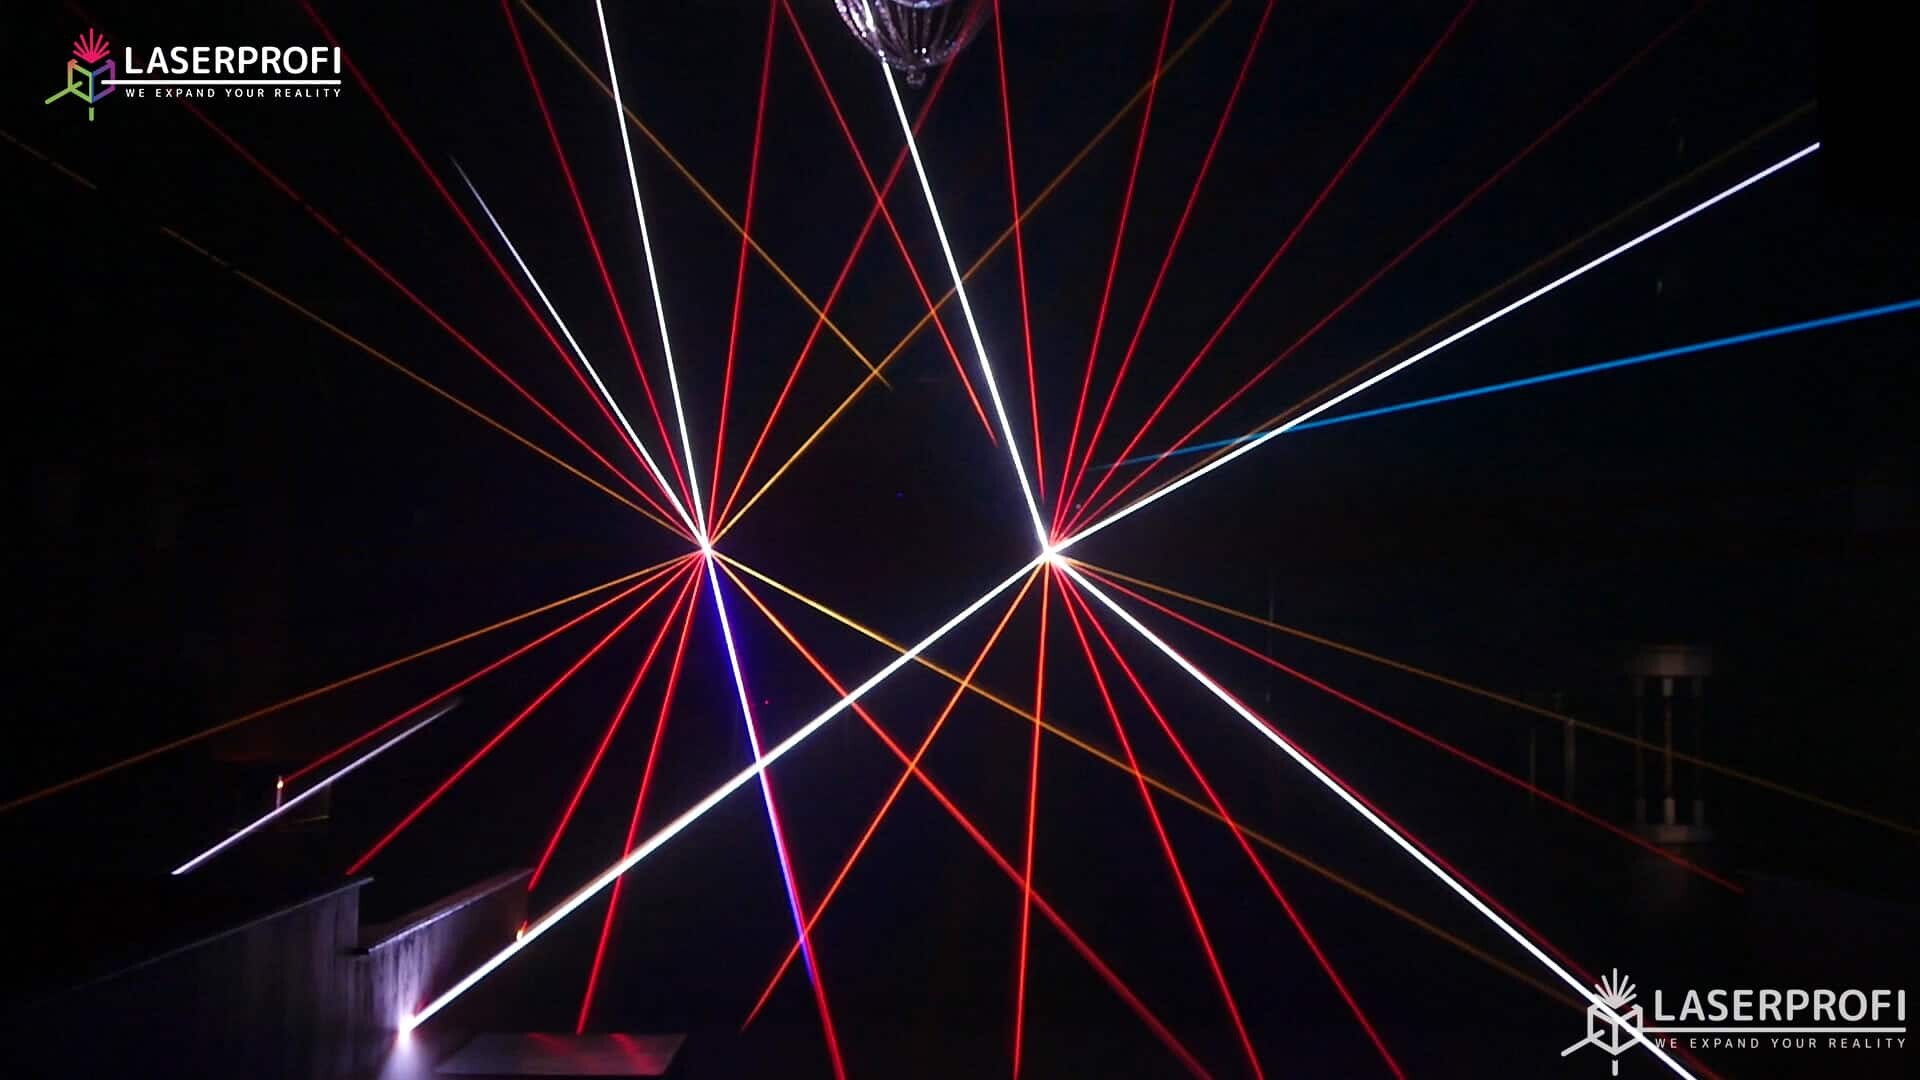 Przestrzenny pokaz laserowy wiązki laserowe